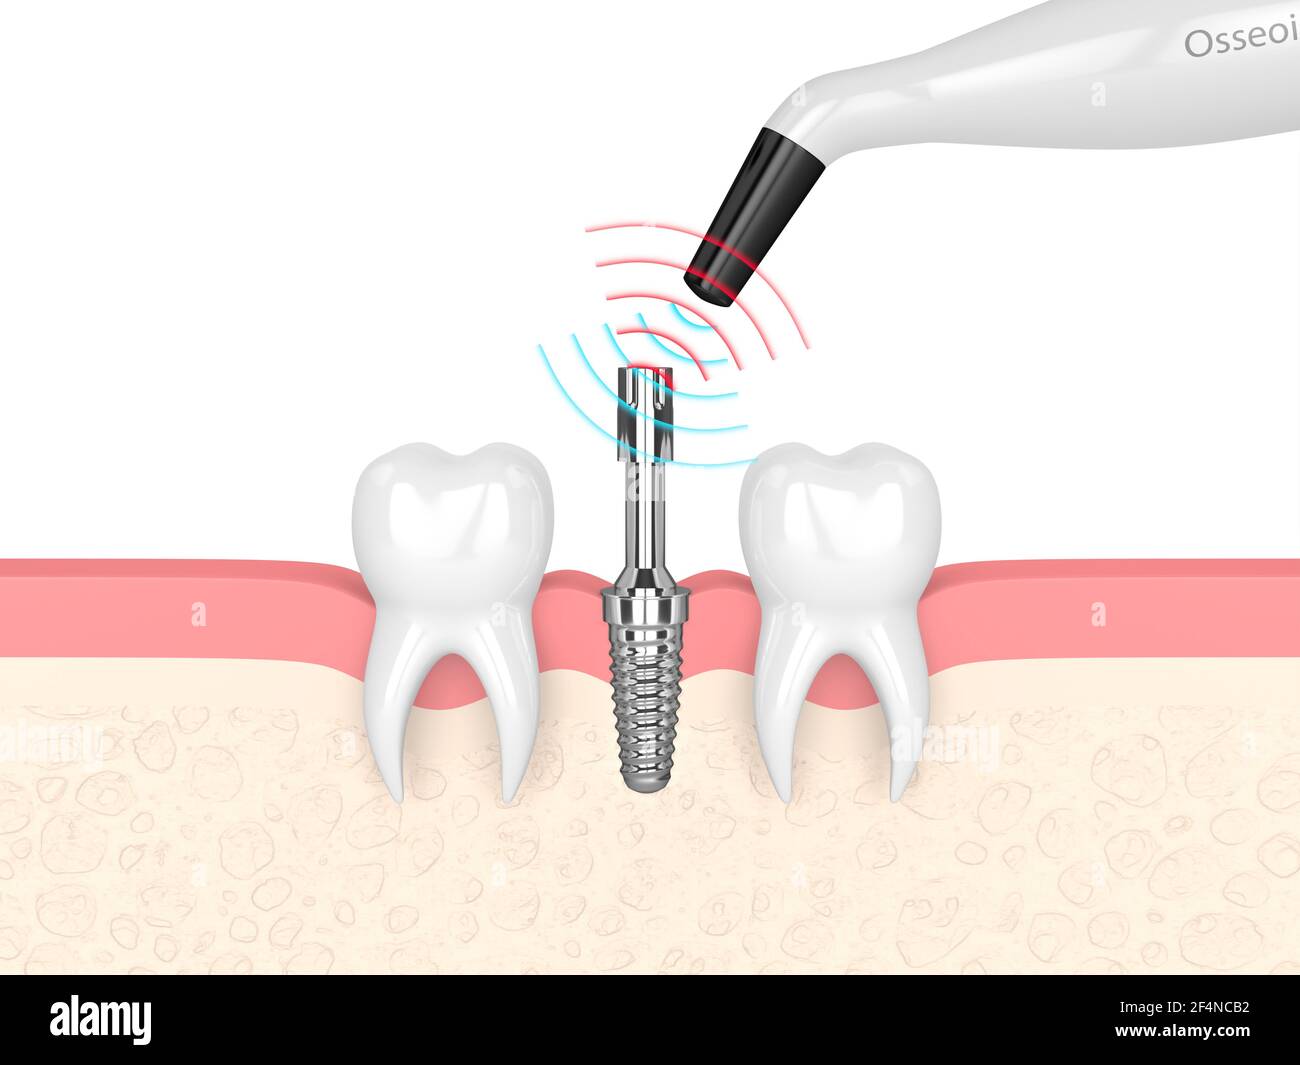 rendu 3d du dispositif de surveillance de l'osmointégration vérifiant la stabilité de l'implant dentaire Banque D'Images